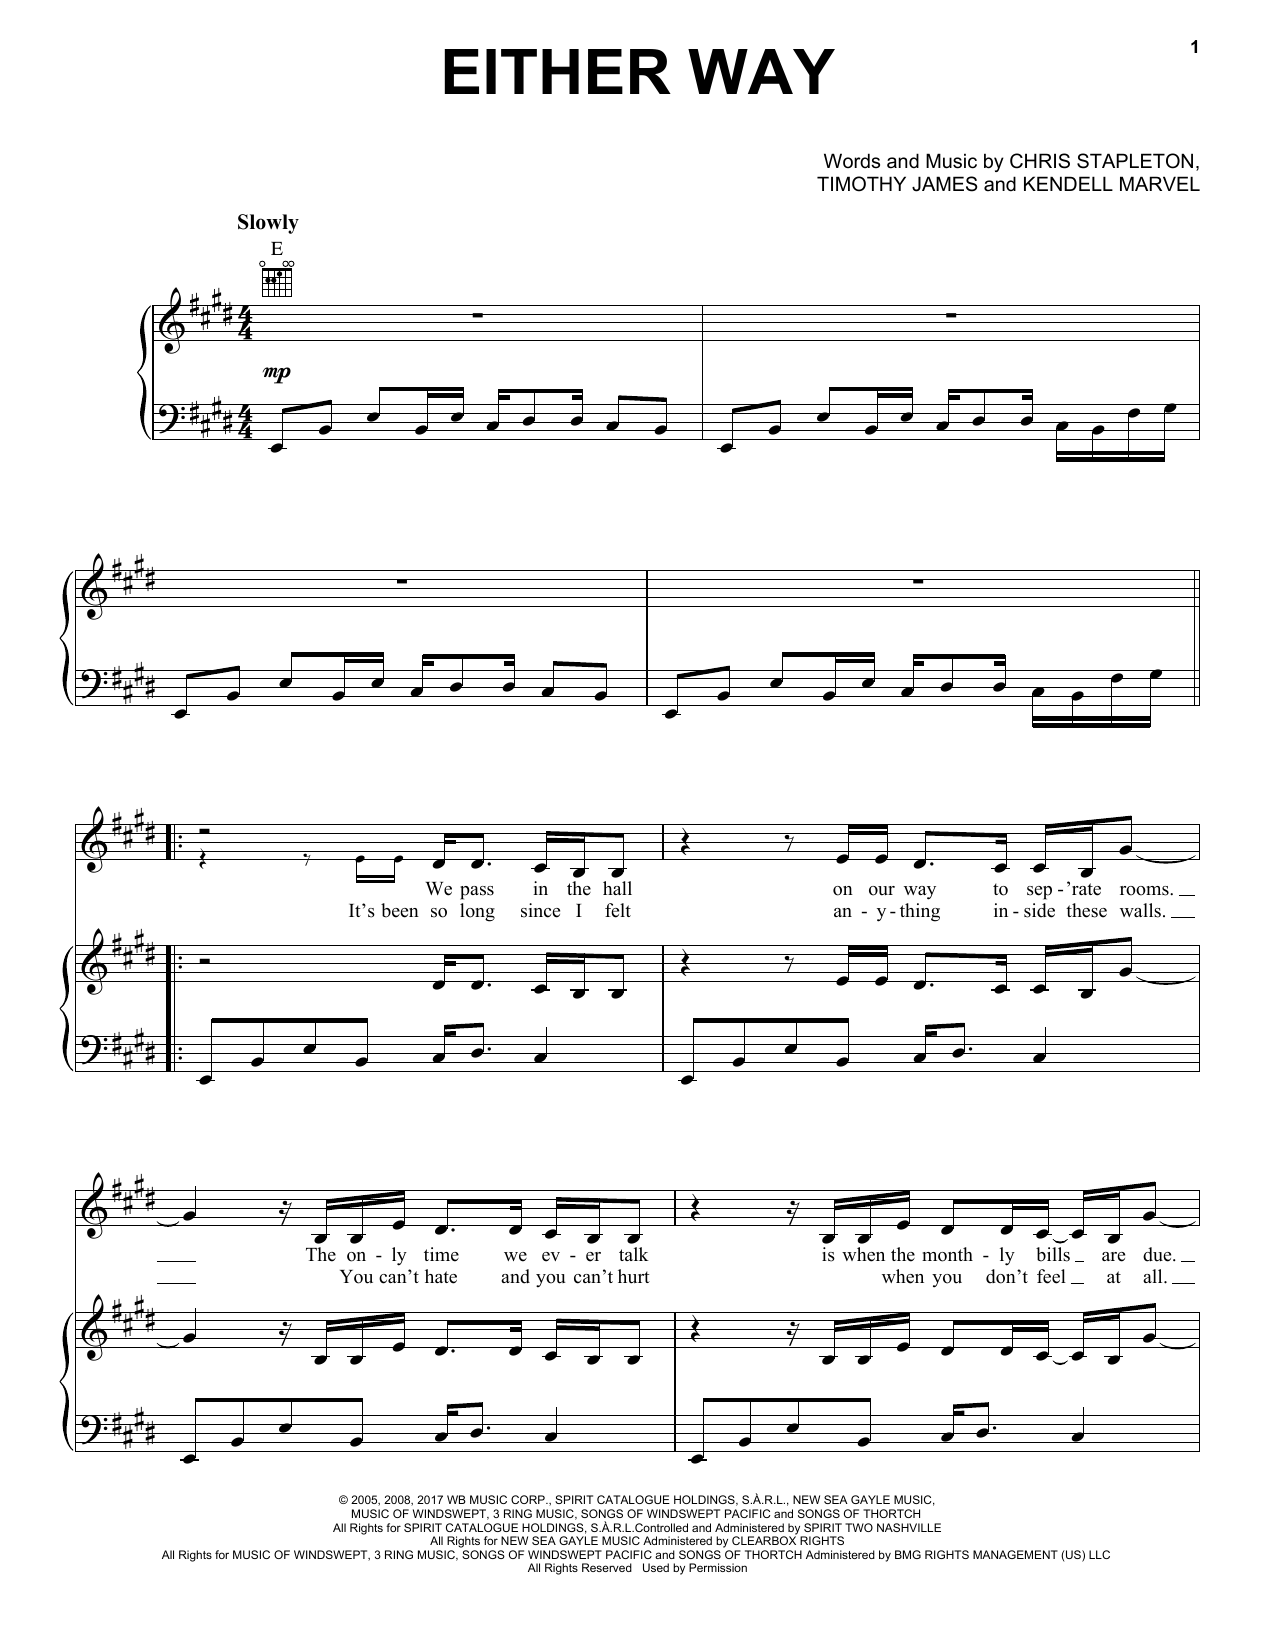 Chris Stapleton Either Way Sheet Music Notes & Chords for Guitar Chords/Lyrics - Download or Print PDF